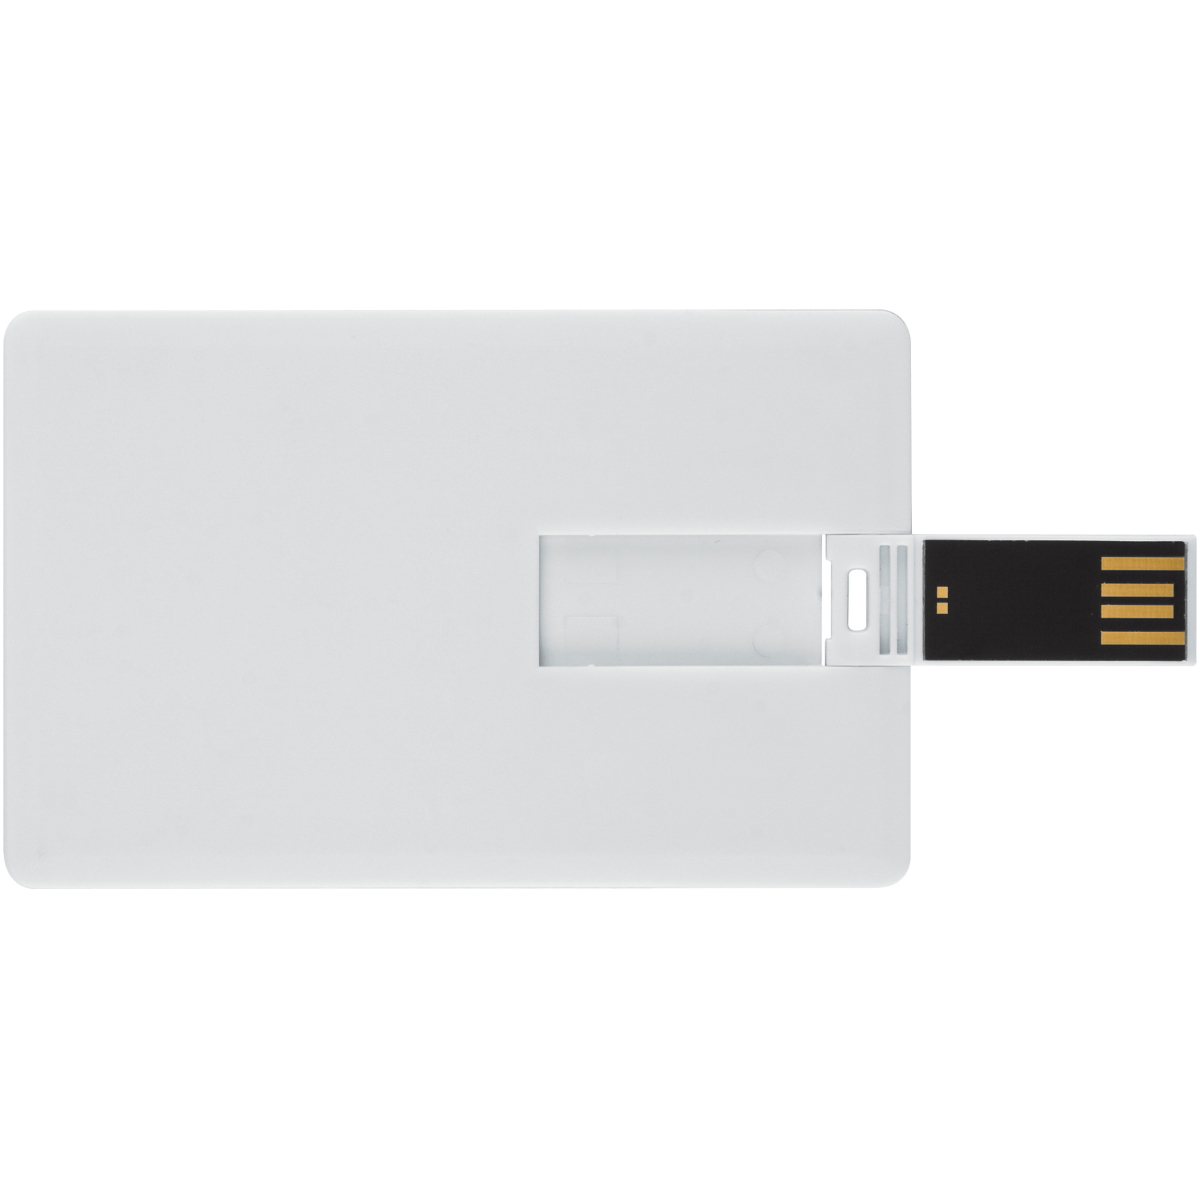 GB) USB Kreditkarte USB-Stick (Weiss, GERMANY 16 ®